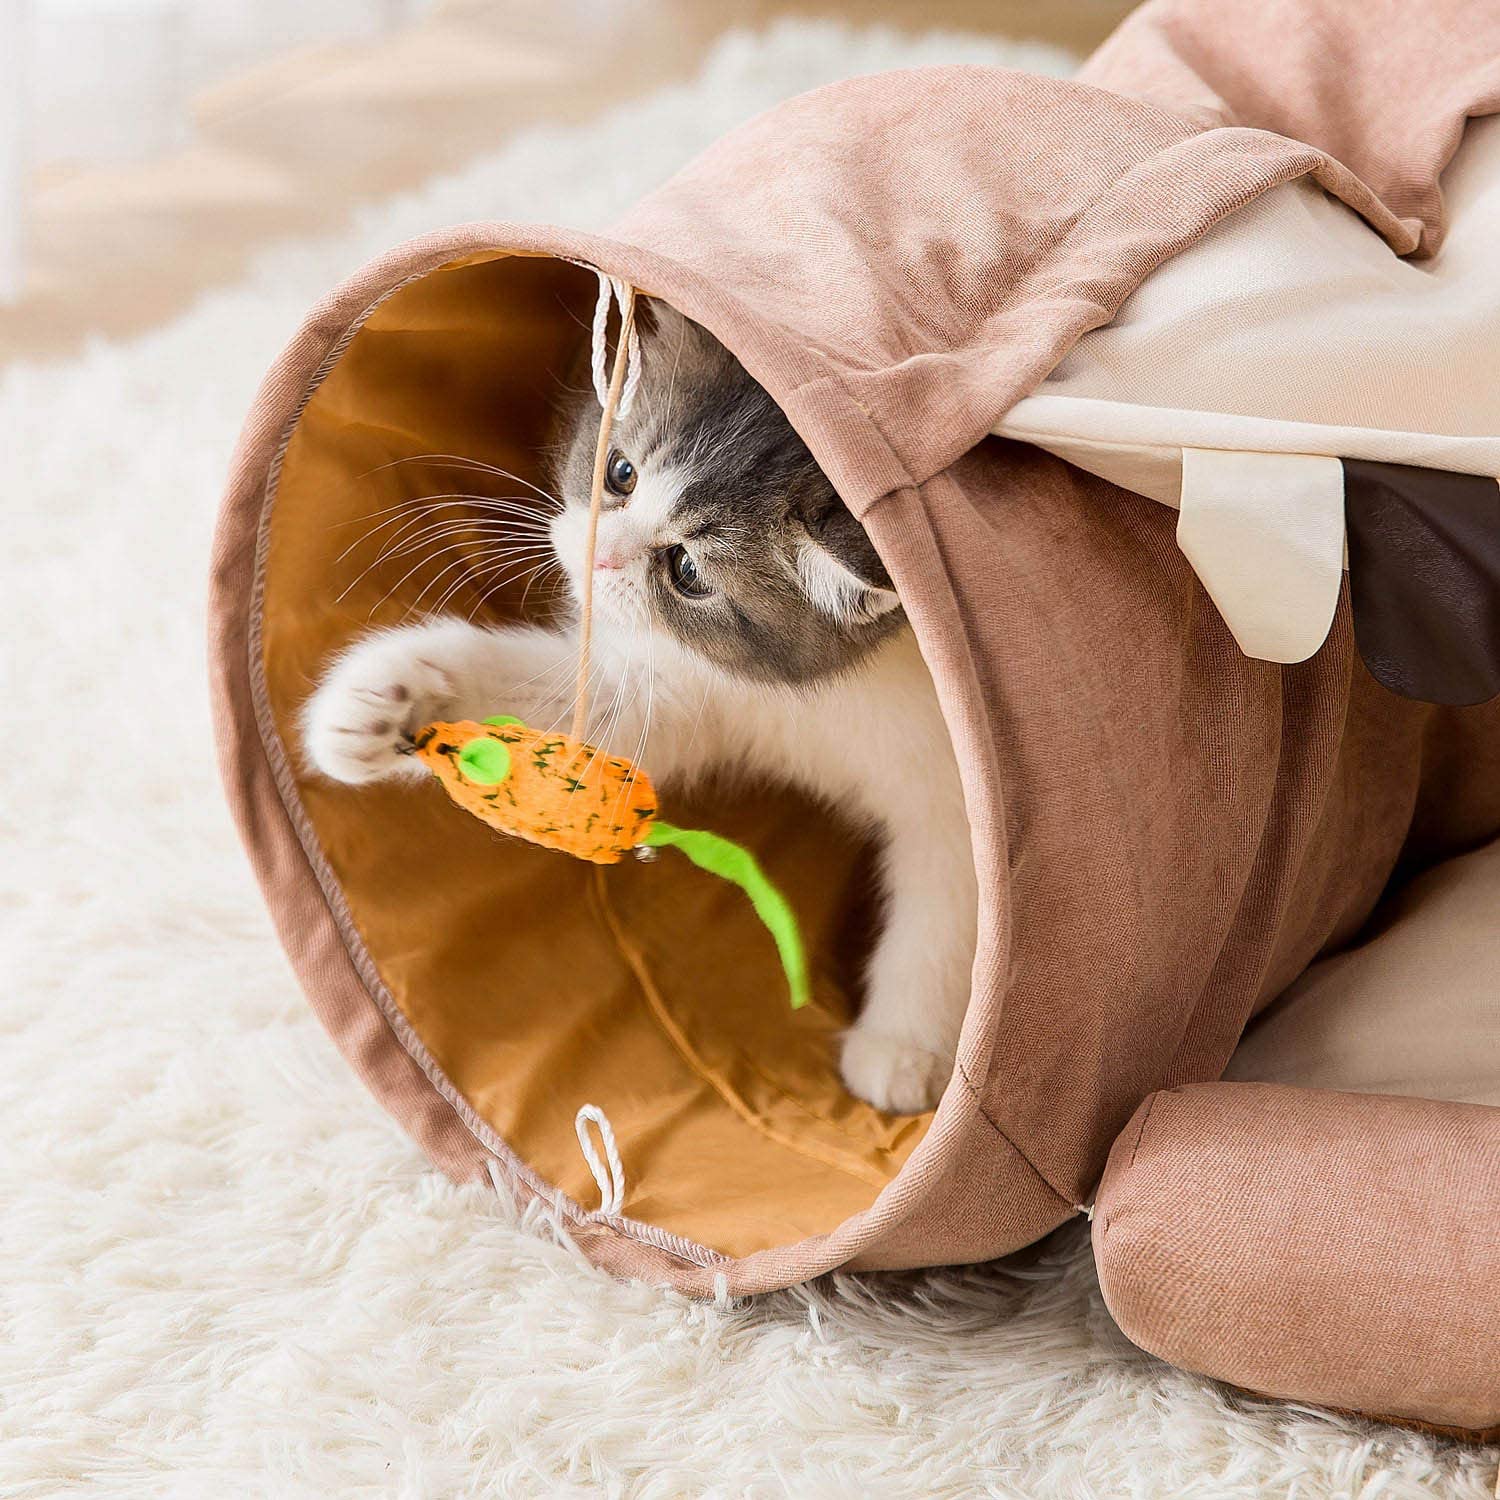  تونل های گربه هیپیپت به نوزادان پشمالو شما فضایی دنج برای بازی و استراحت می دهد